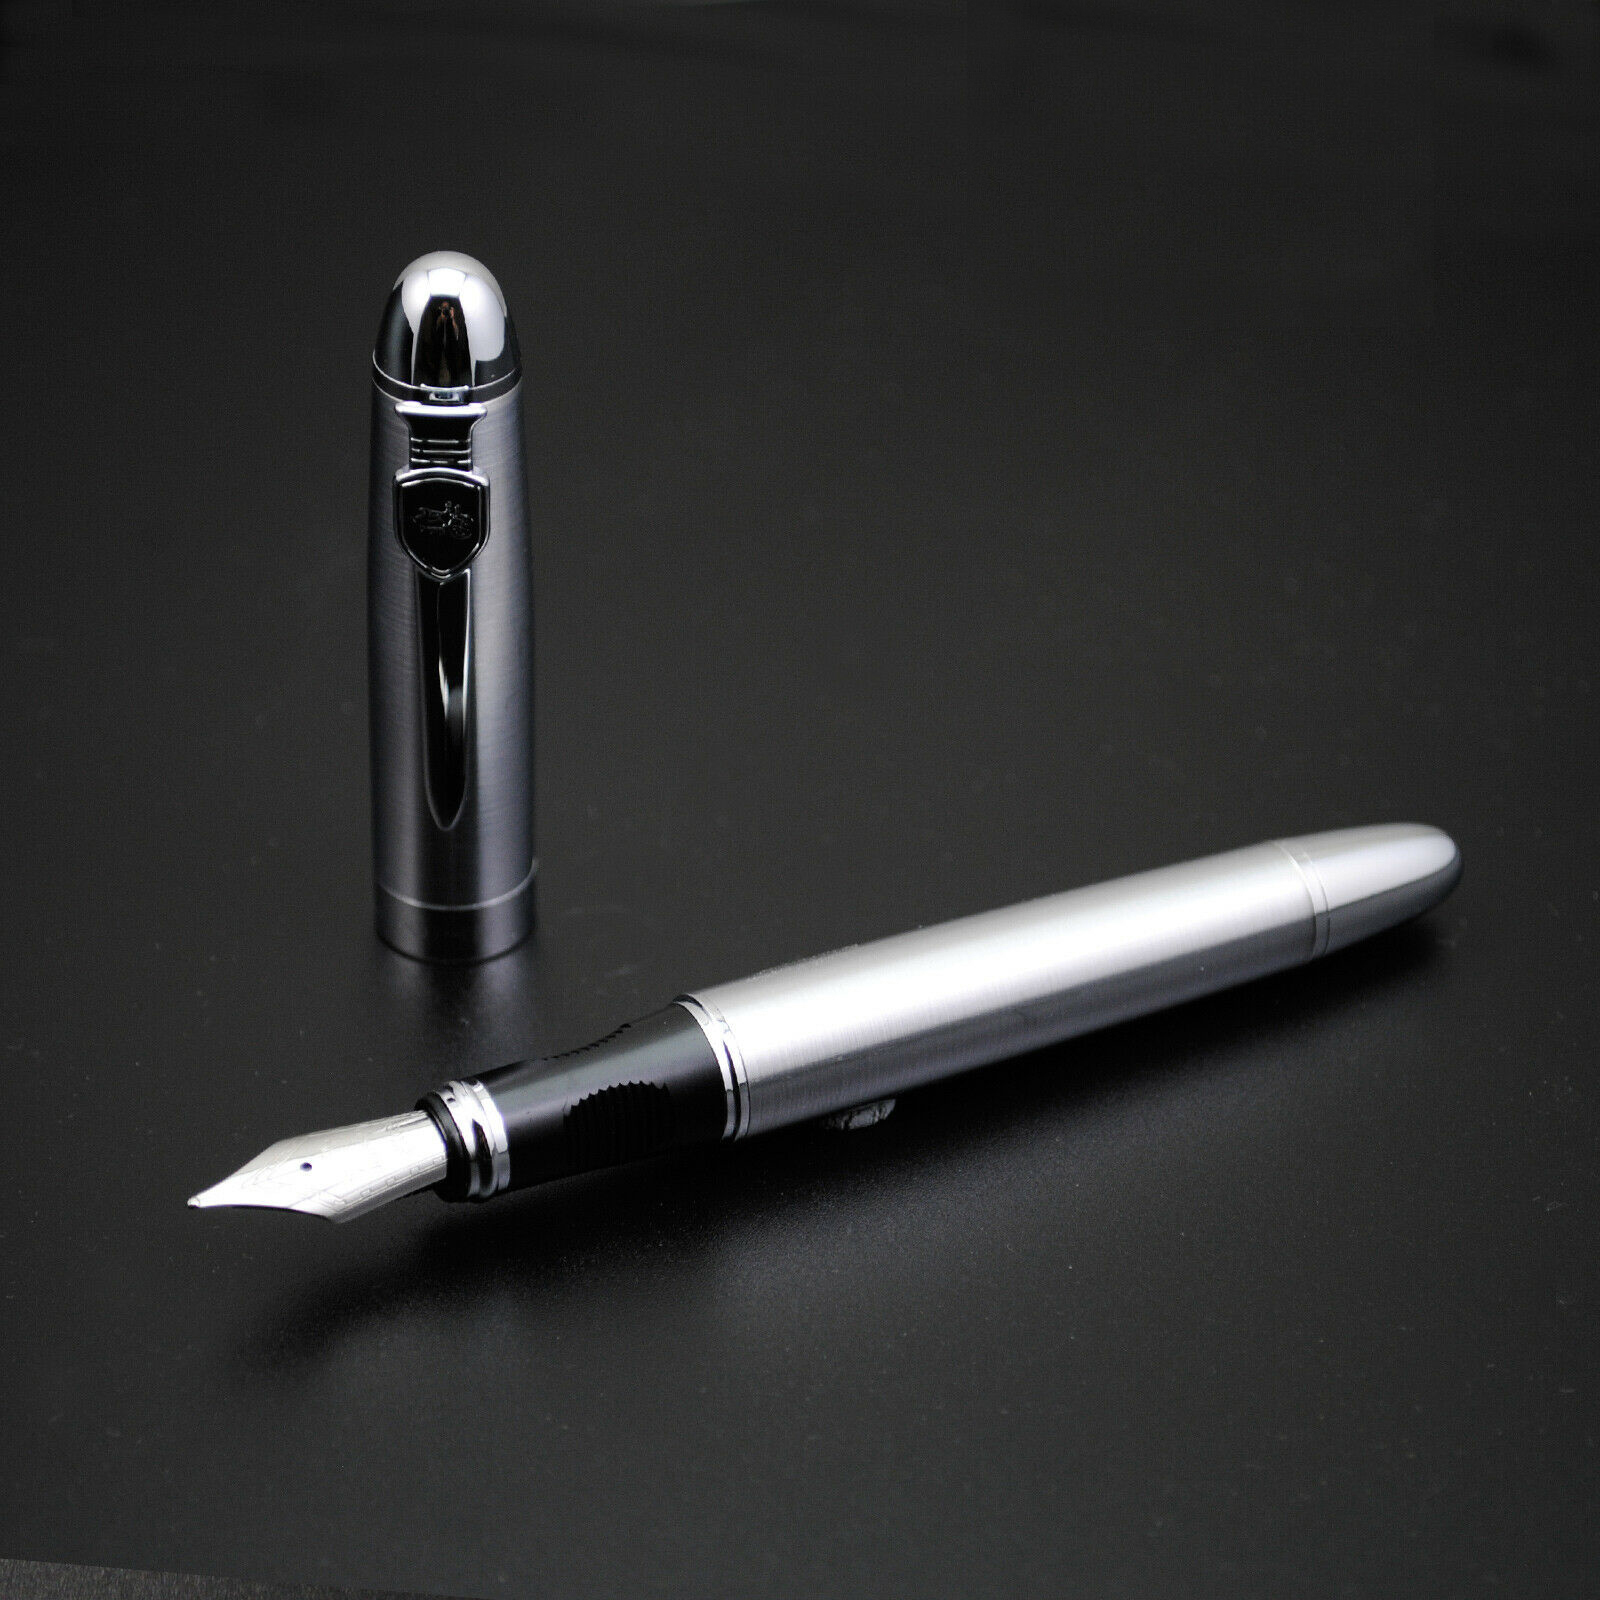 Перьевая ручка Jinhao 450А, Китай. Перо М (0.75 мм), корпус металл. Цвет серебристый. SALE 1500!